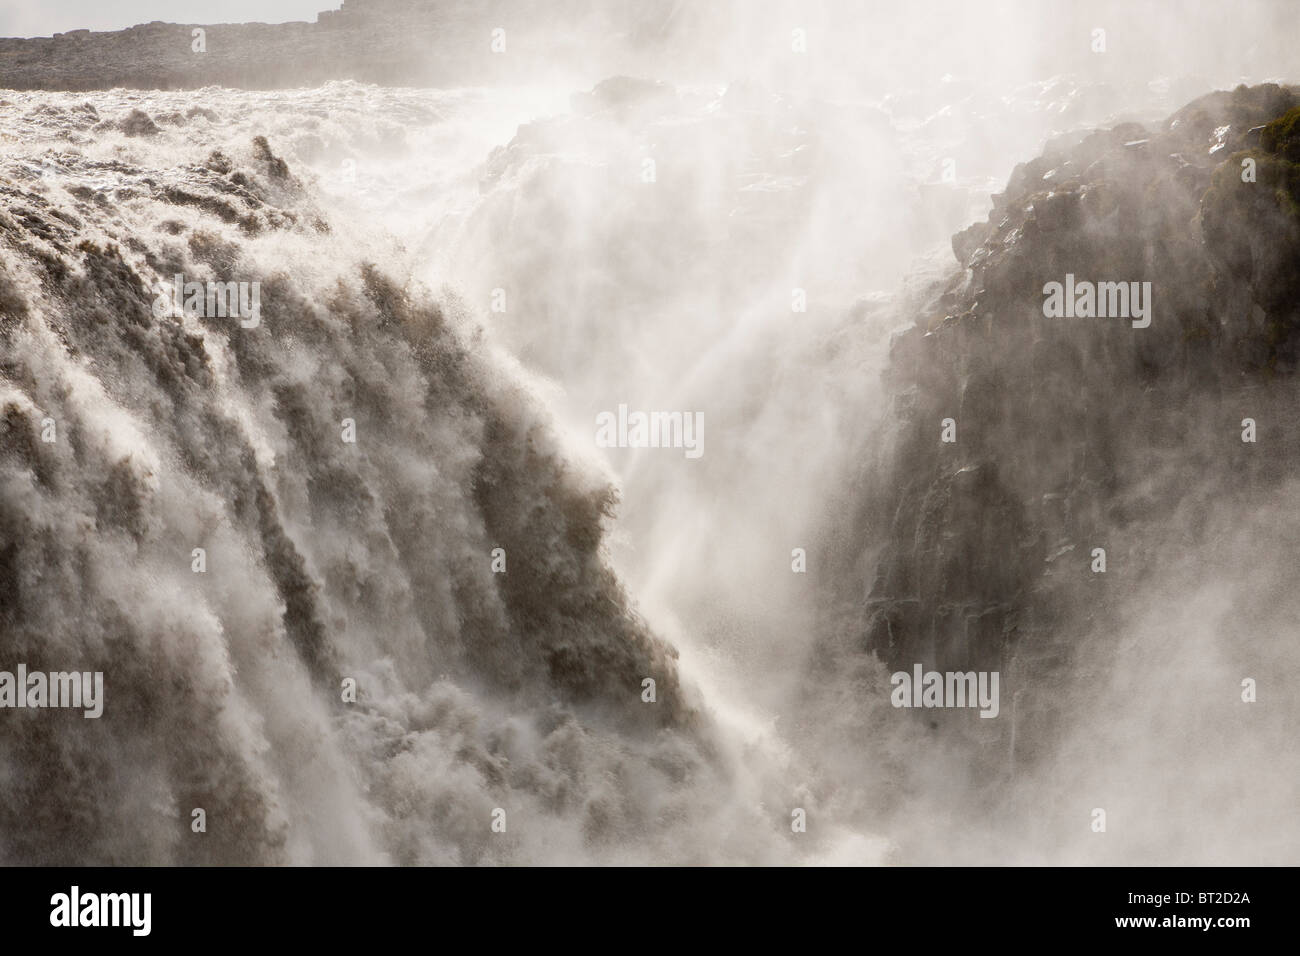 Dettifoss cascata, la più grande in Europa in termini di volume, con una goccia di 47 metri Foto Stock